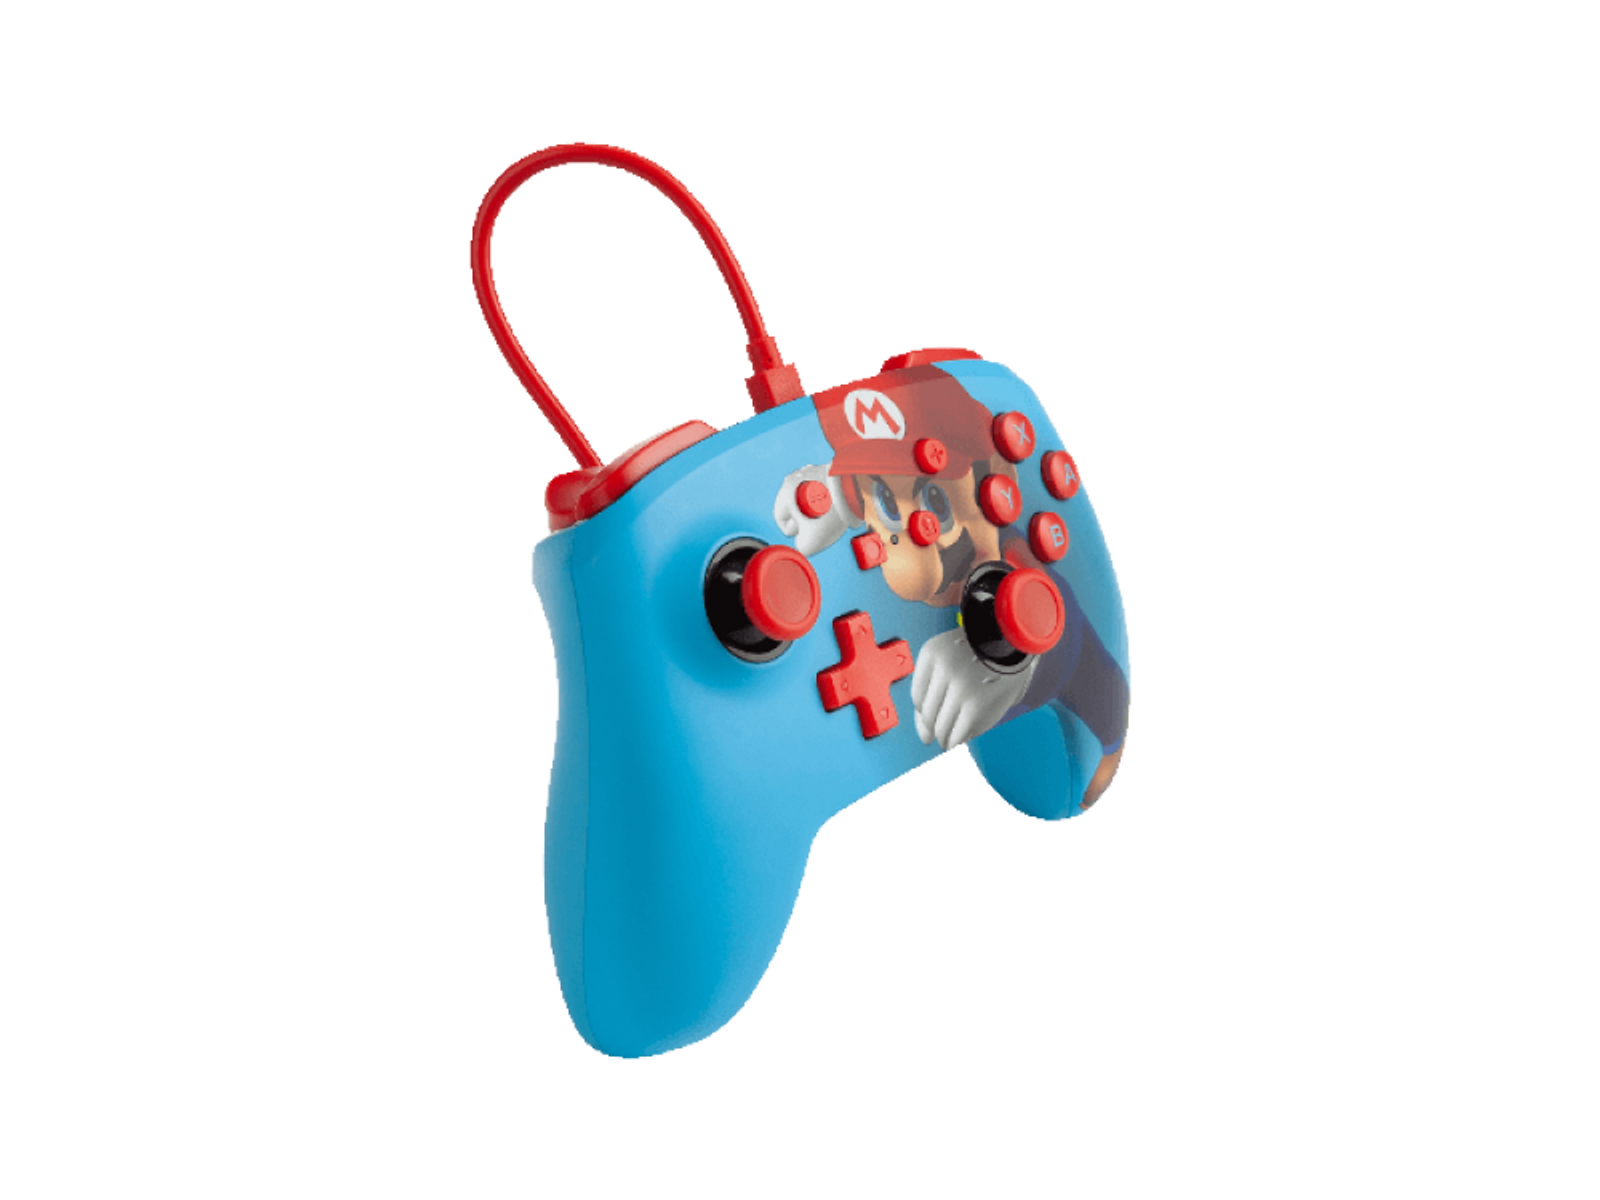 A Controller Mario POWER Punch Blau Controller